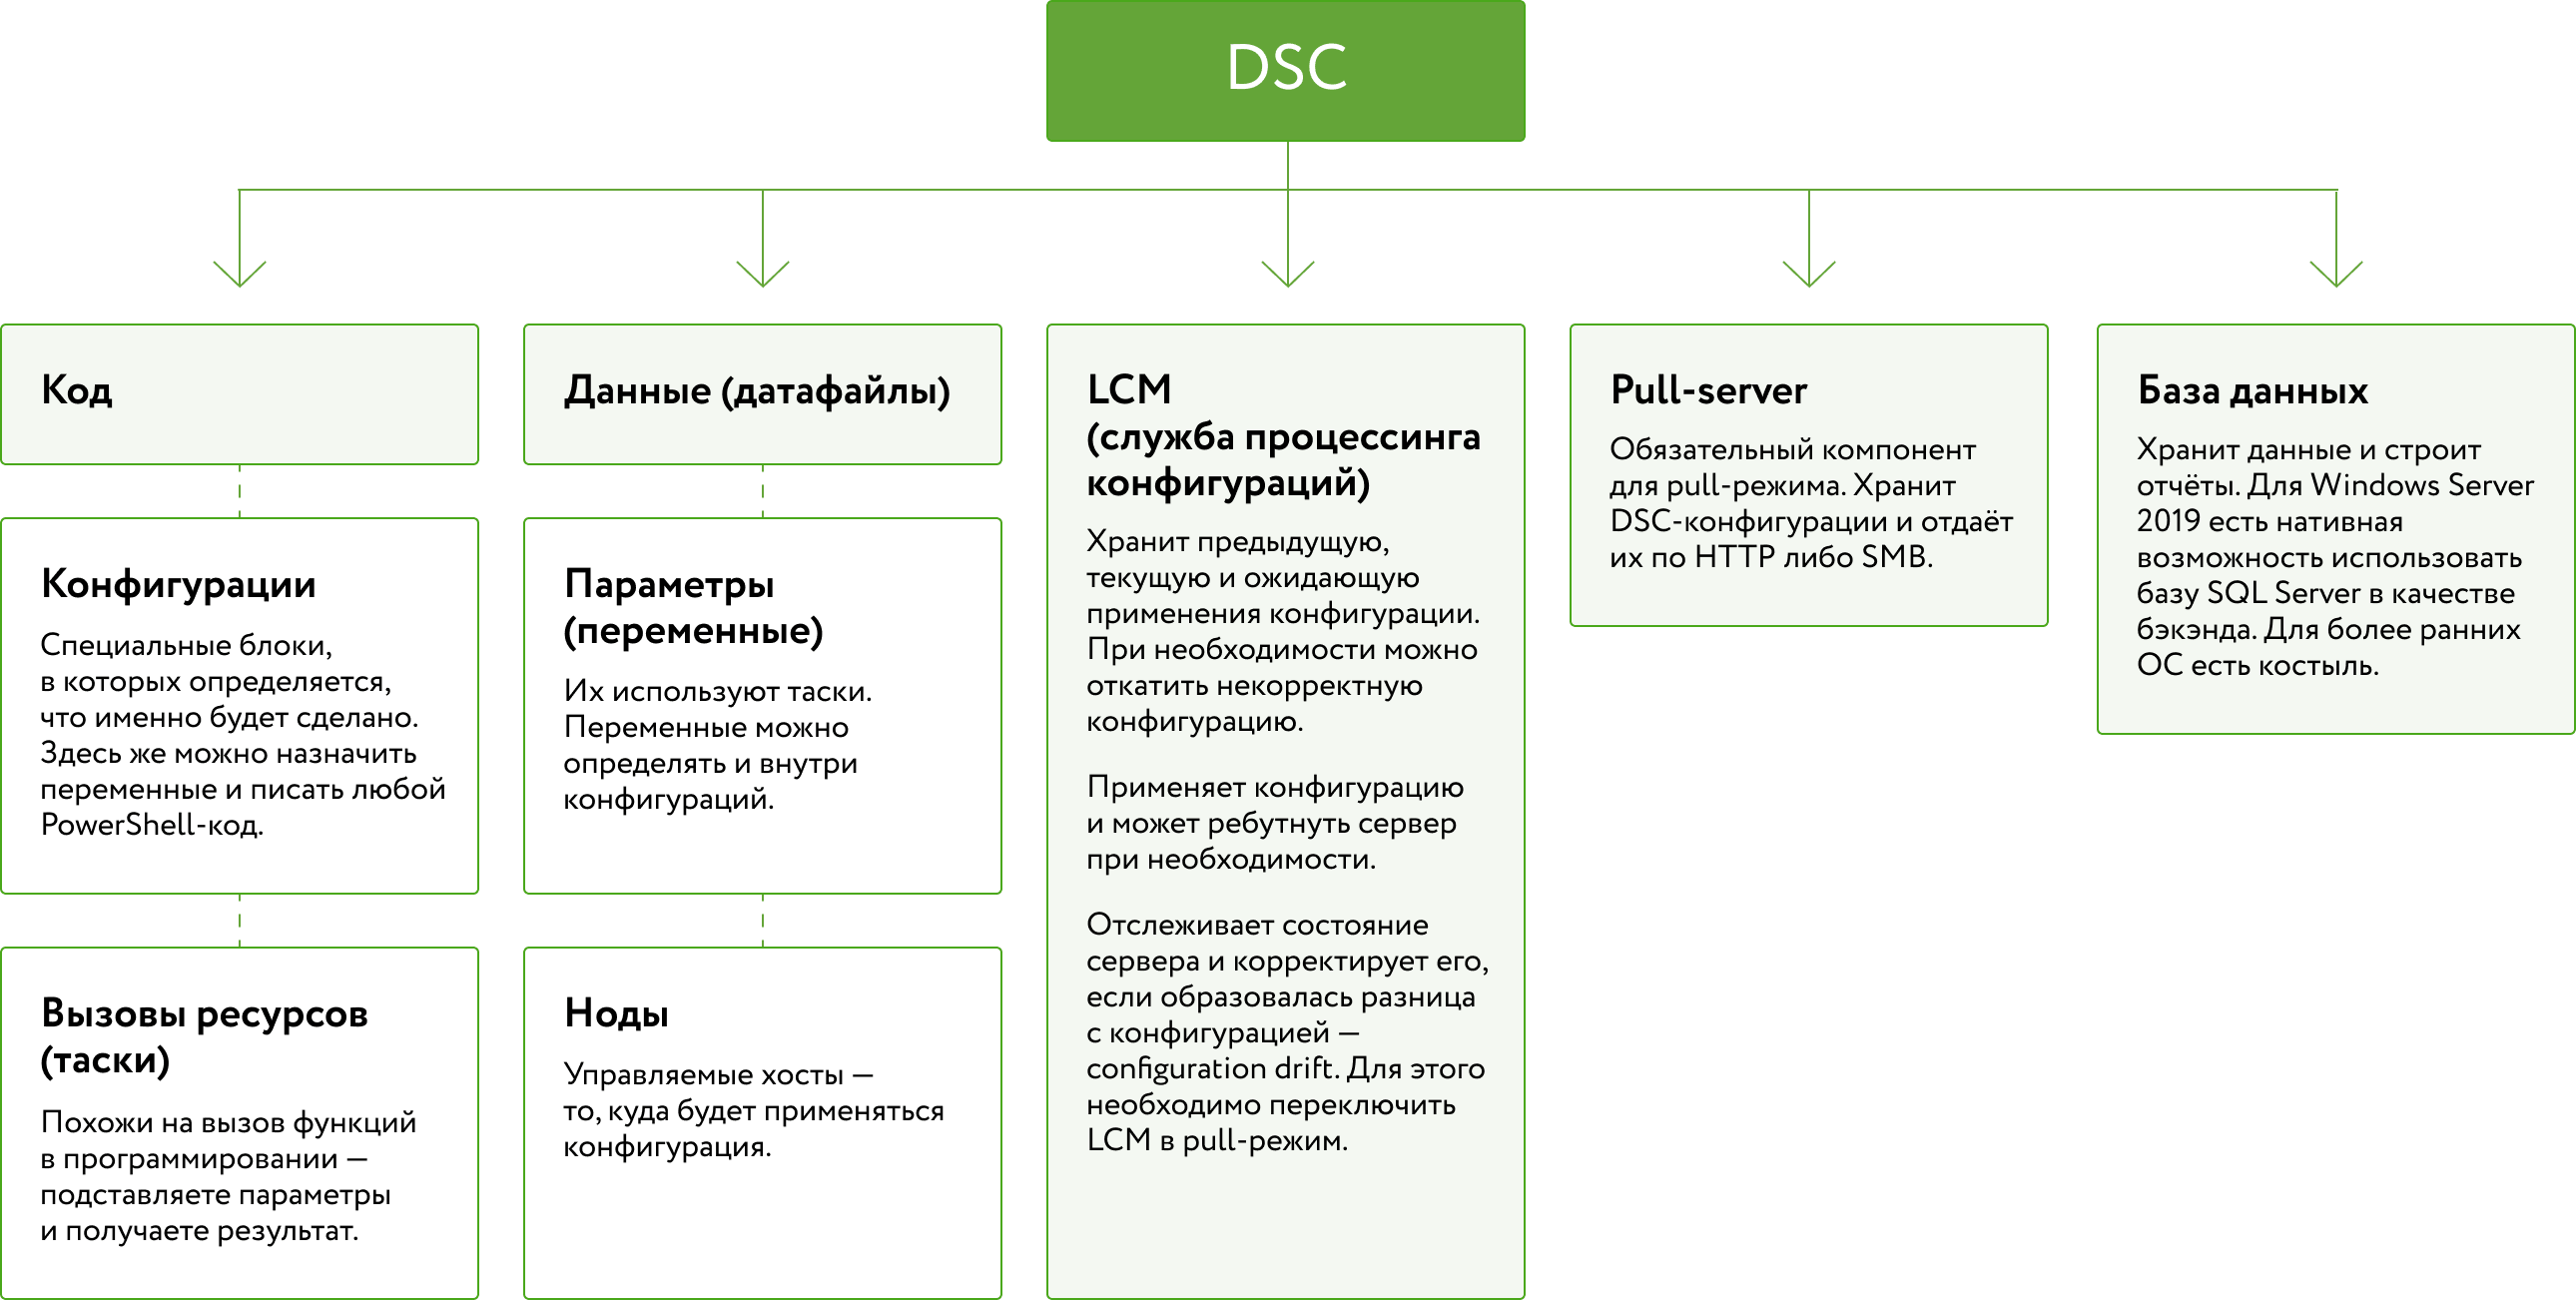 Устройство DSC